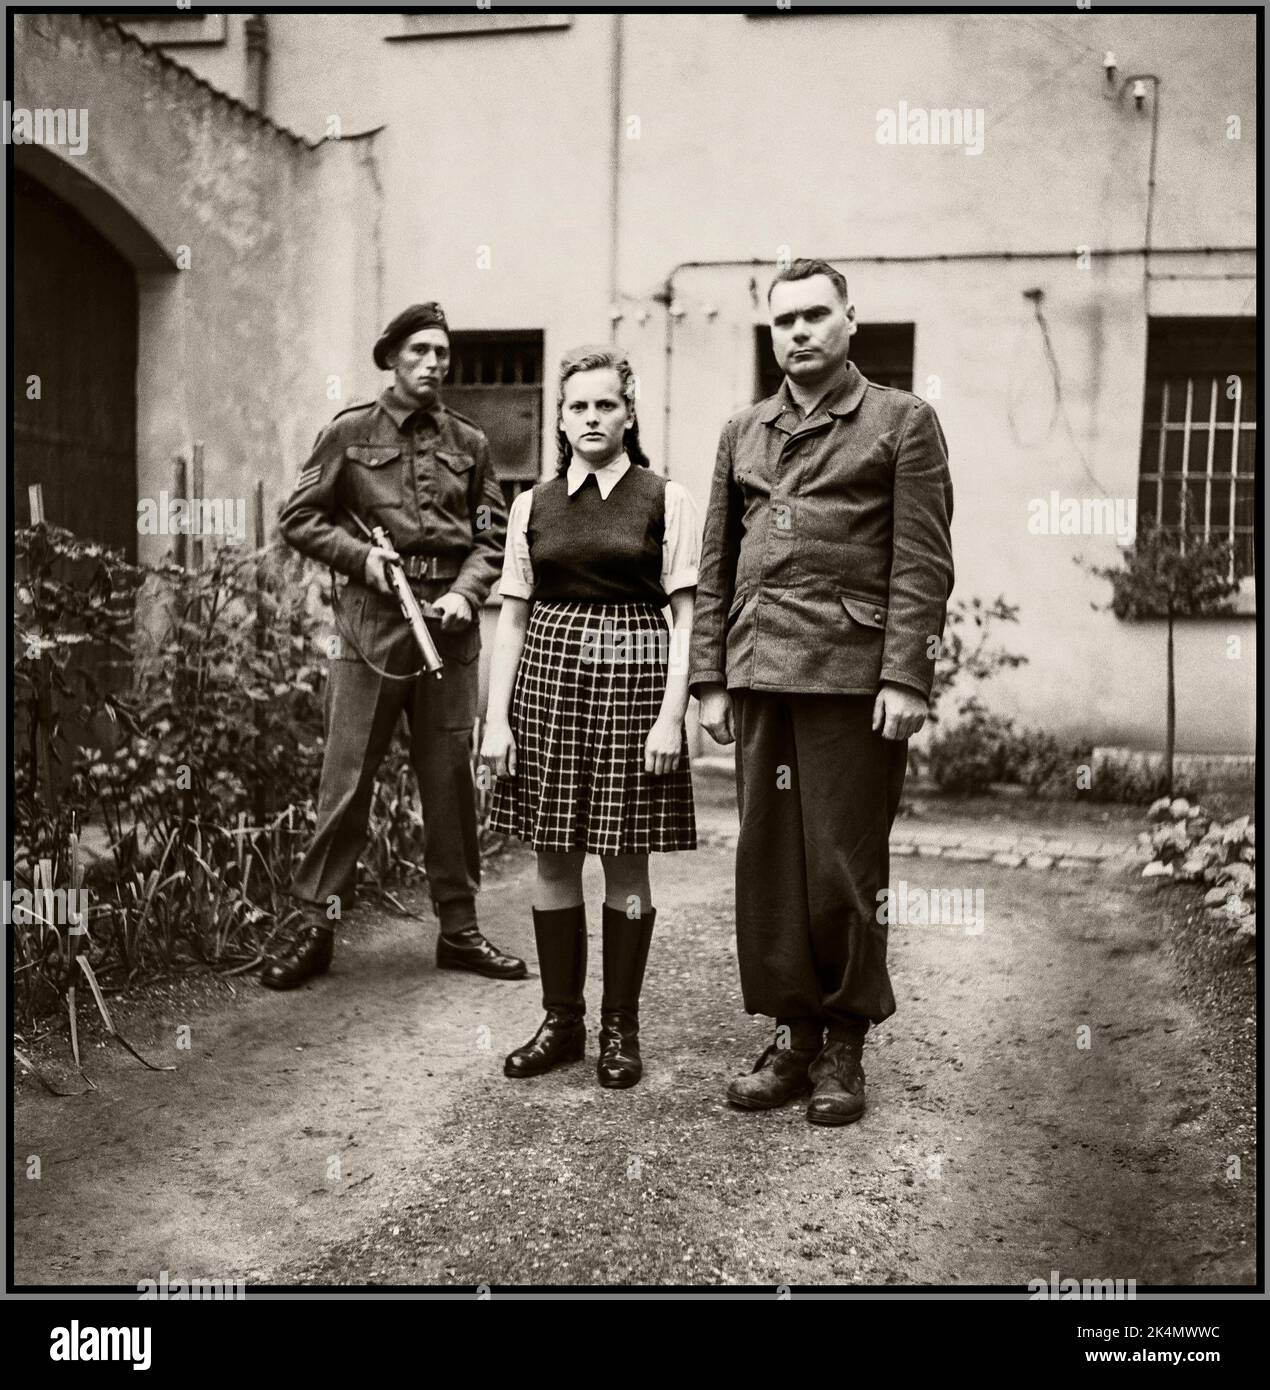 IRMA GRESE GUARDIA DEL CAMPO DI CONCENTRAMENTO NAZISTA (sinistra) Irma Ilse Ida Grese (7 ottobre 1923 – 13 dicembre 1945) fu una guardia nazista del campo di concentramento a Ravensbrück e Auschwitz, e prestò servizio come guardia della sezione femminile di Bergen-Belsen. Insieme a Joseph Kramer BESTIA DI BELSEN Hauptsturmführer e comandante di Auschwitz-Birkenau e dei campi di concentramento di Bergen-Belsen. Essere sorvegliato in custodia da un soldato britannico. Due sadici funzionari del campo di concentramento nazista che furono giustiziati per i loro crimini di guerra contro l'umanità. Foto Stock